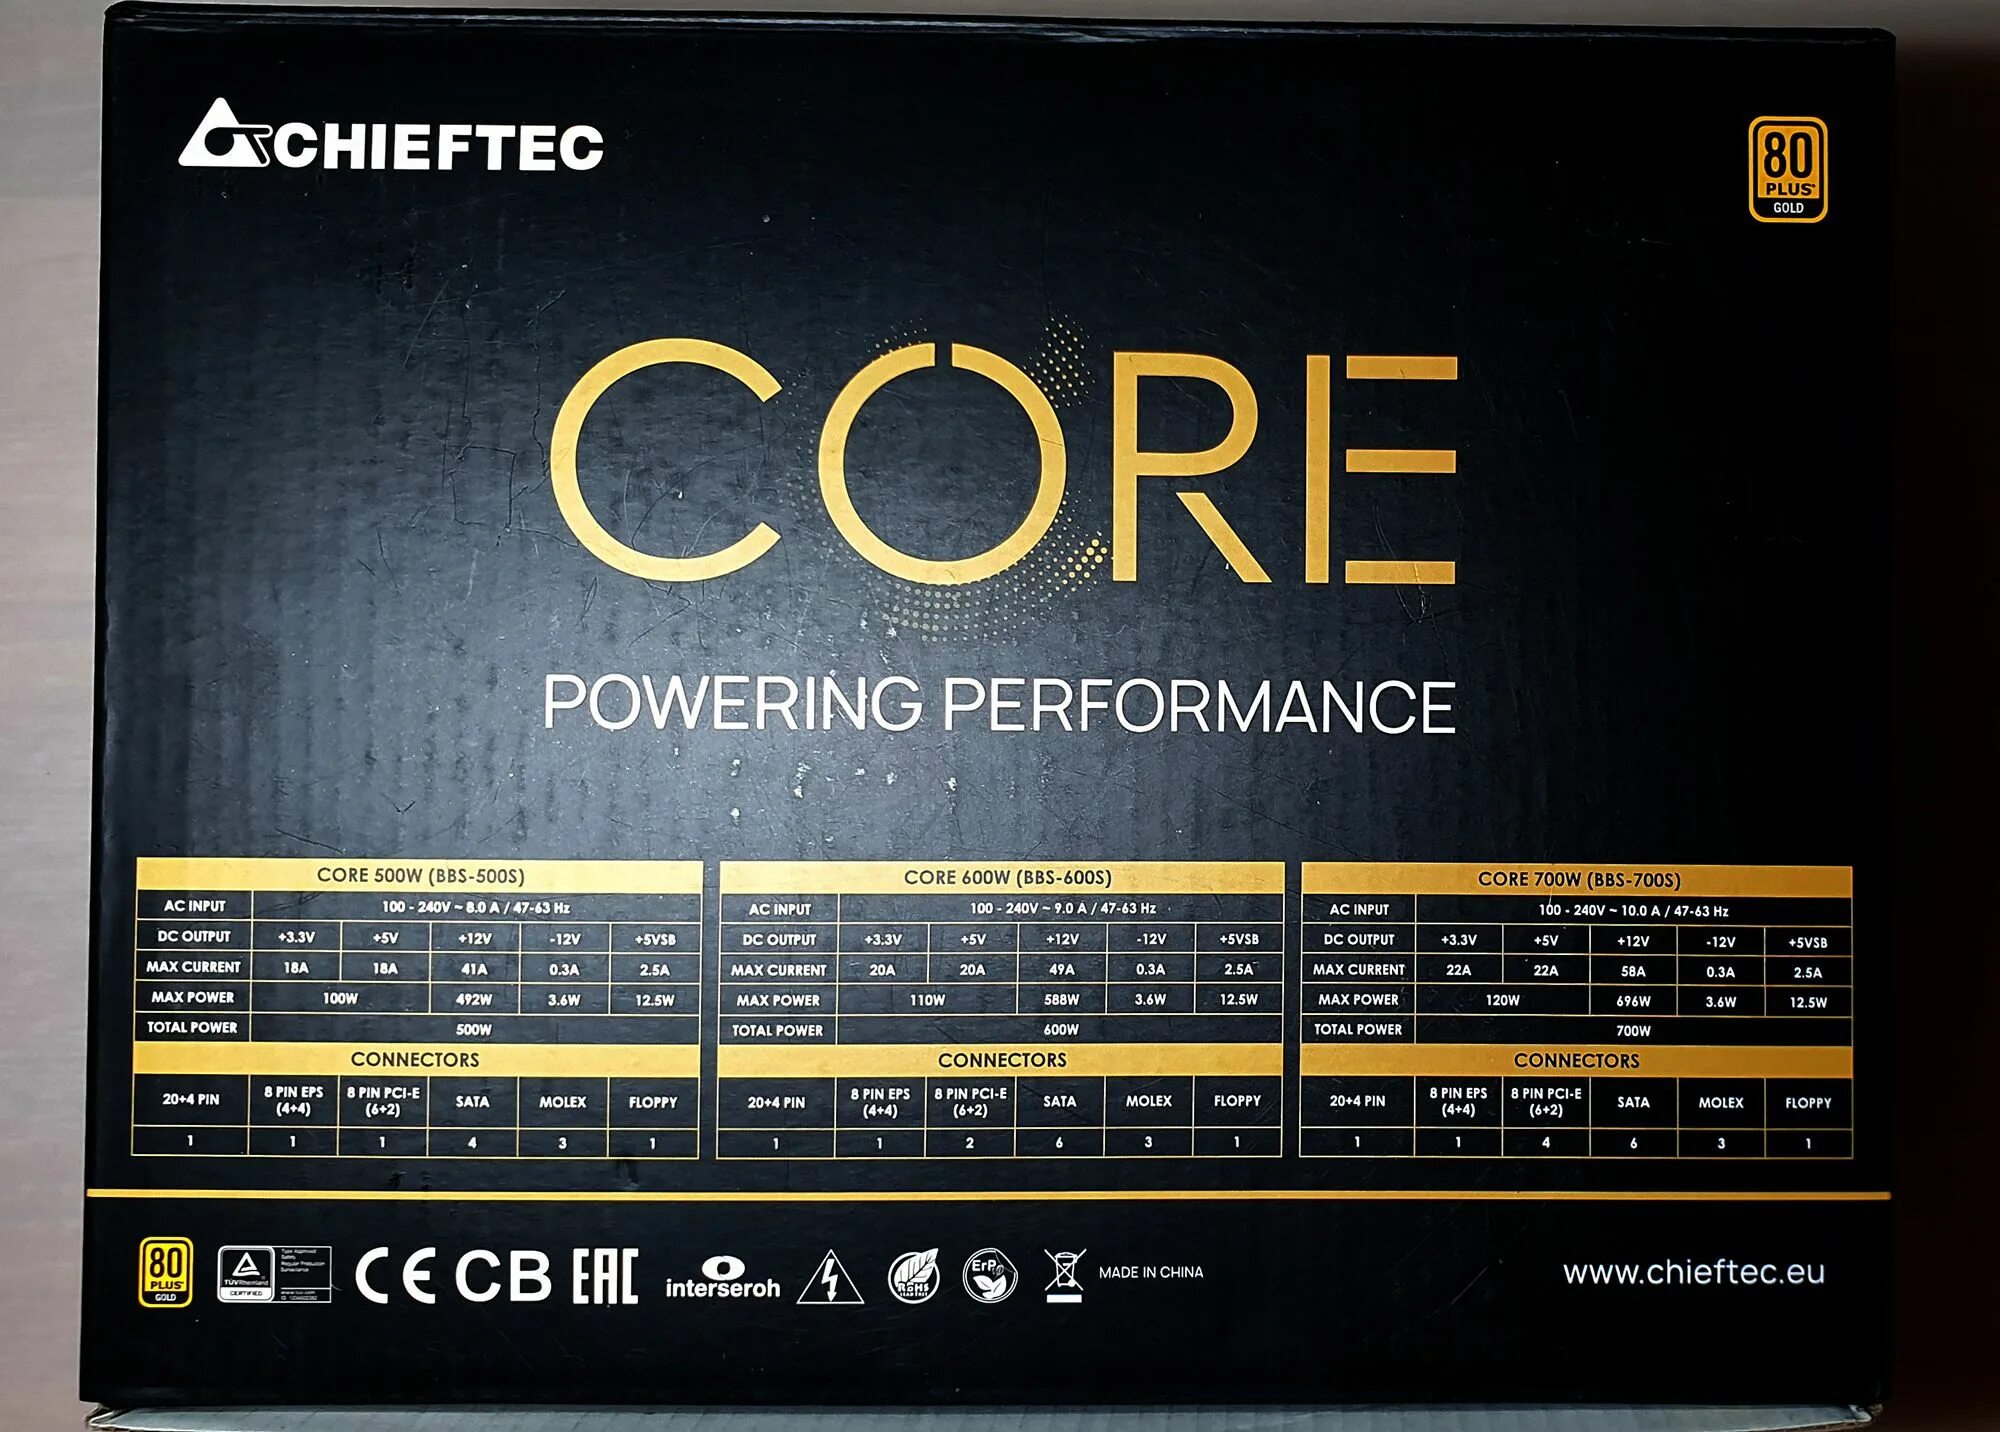 Chieftec core 700w